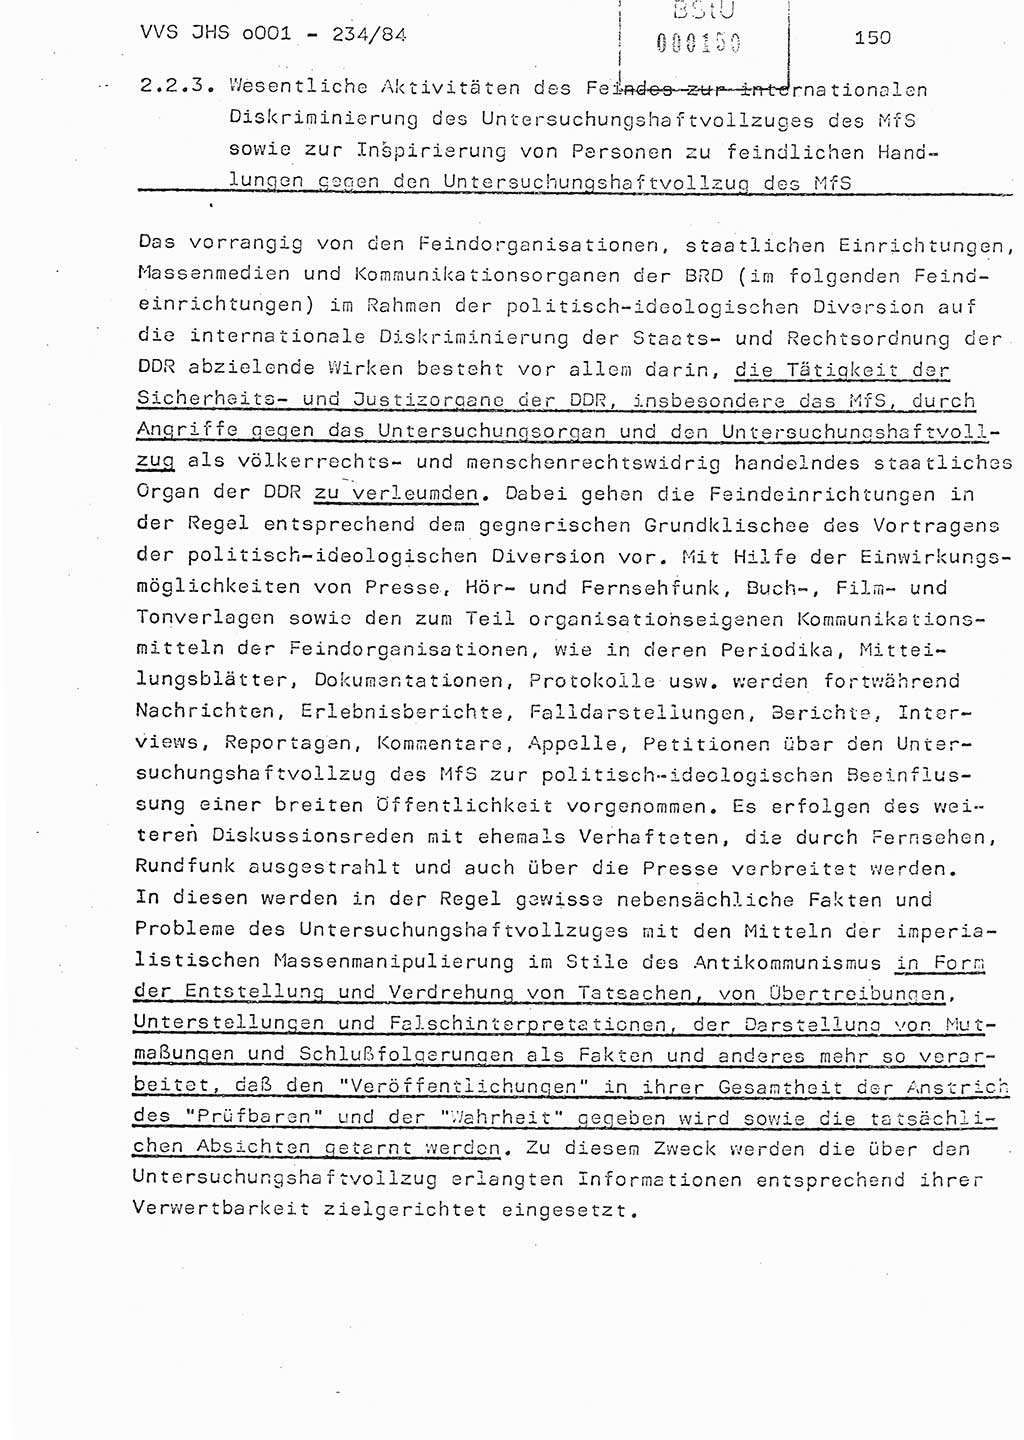 Dissertation Oberst Siegfried Rataizick (Abt. ⅩⅣ), Oberstleutnant Volkmar Heinz (Abt. ⅩⅣ), Oberstleutnant Werner Stein (HA Ⅸ), Hauptmann Heinz Conrad (JHS), Ministerium für Staatssicherheit (MfS) [Deutsche Demokratische Republik (DDR)], Juristische Hochschule (JHS), Vertrauliche Verschlußsache (VVS) o001-234/84, Potsdam 1984, Seite 150 (Diss. MfS DDR JHS VVS o001-234/84 1984, S. 150)